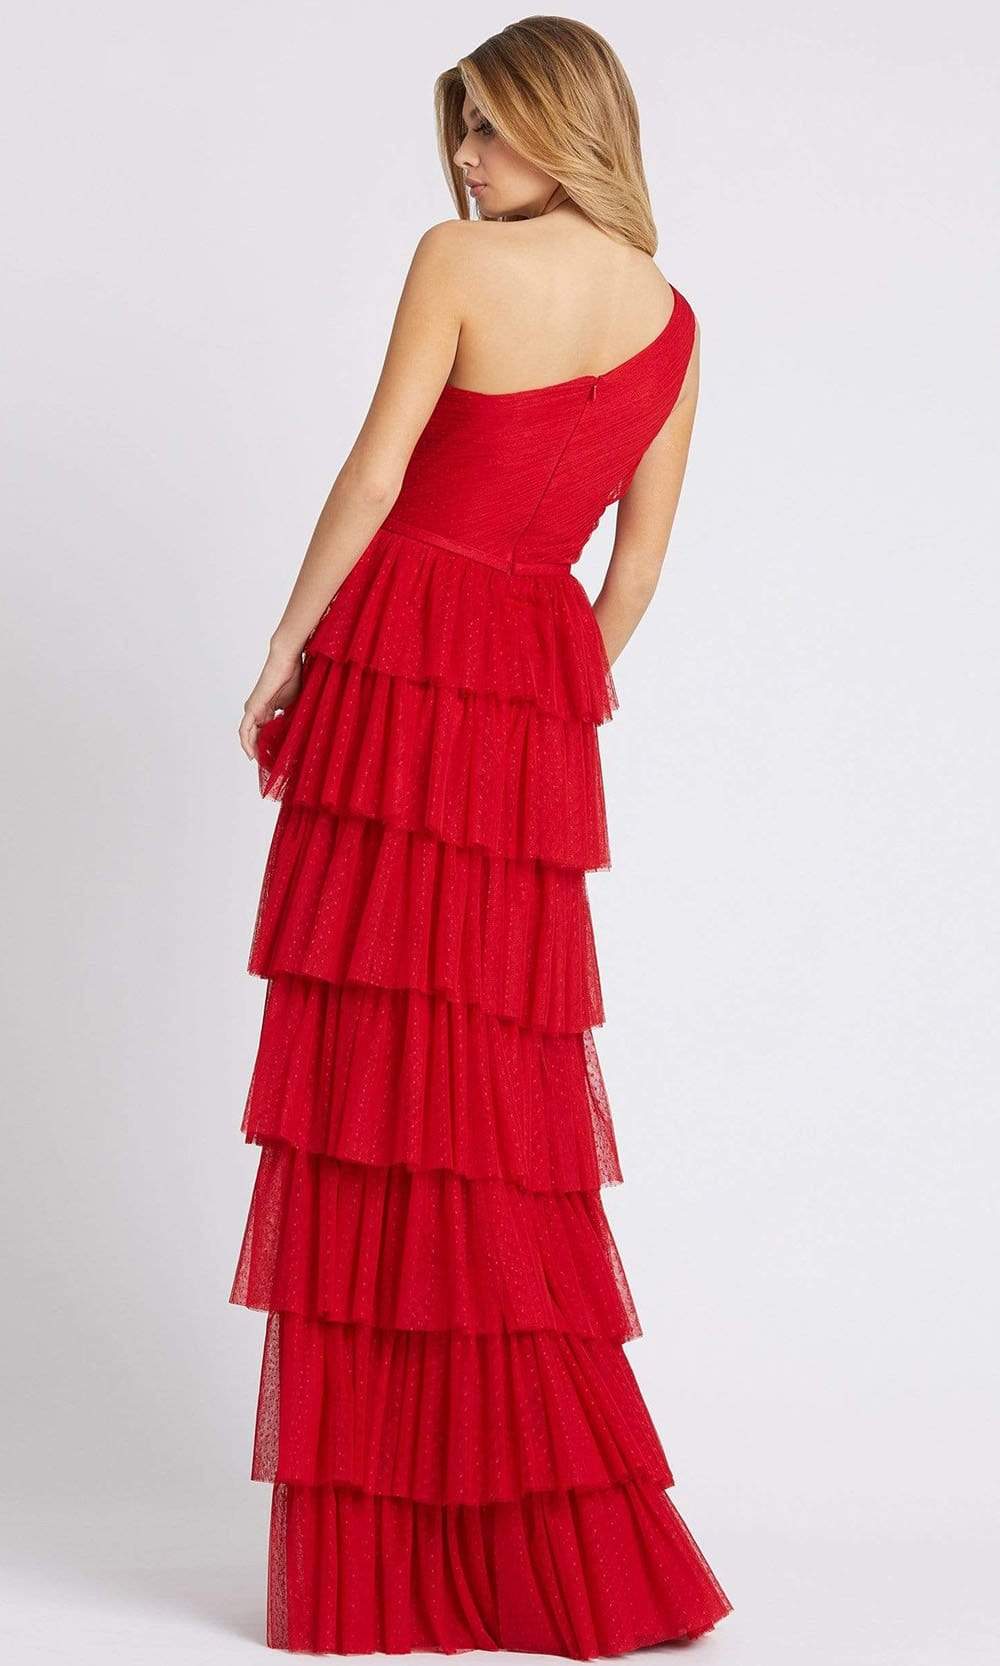 Red Chiffon Ruffle Layer Maxi Dress